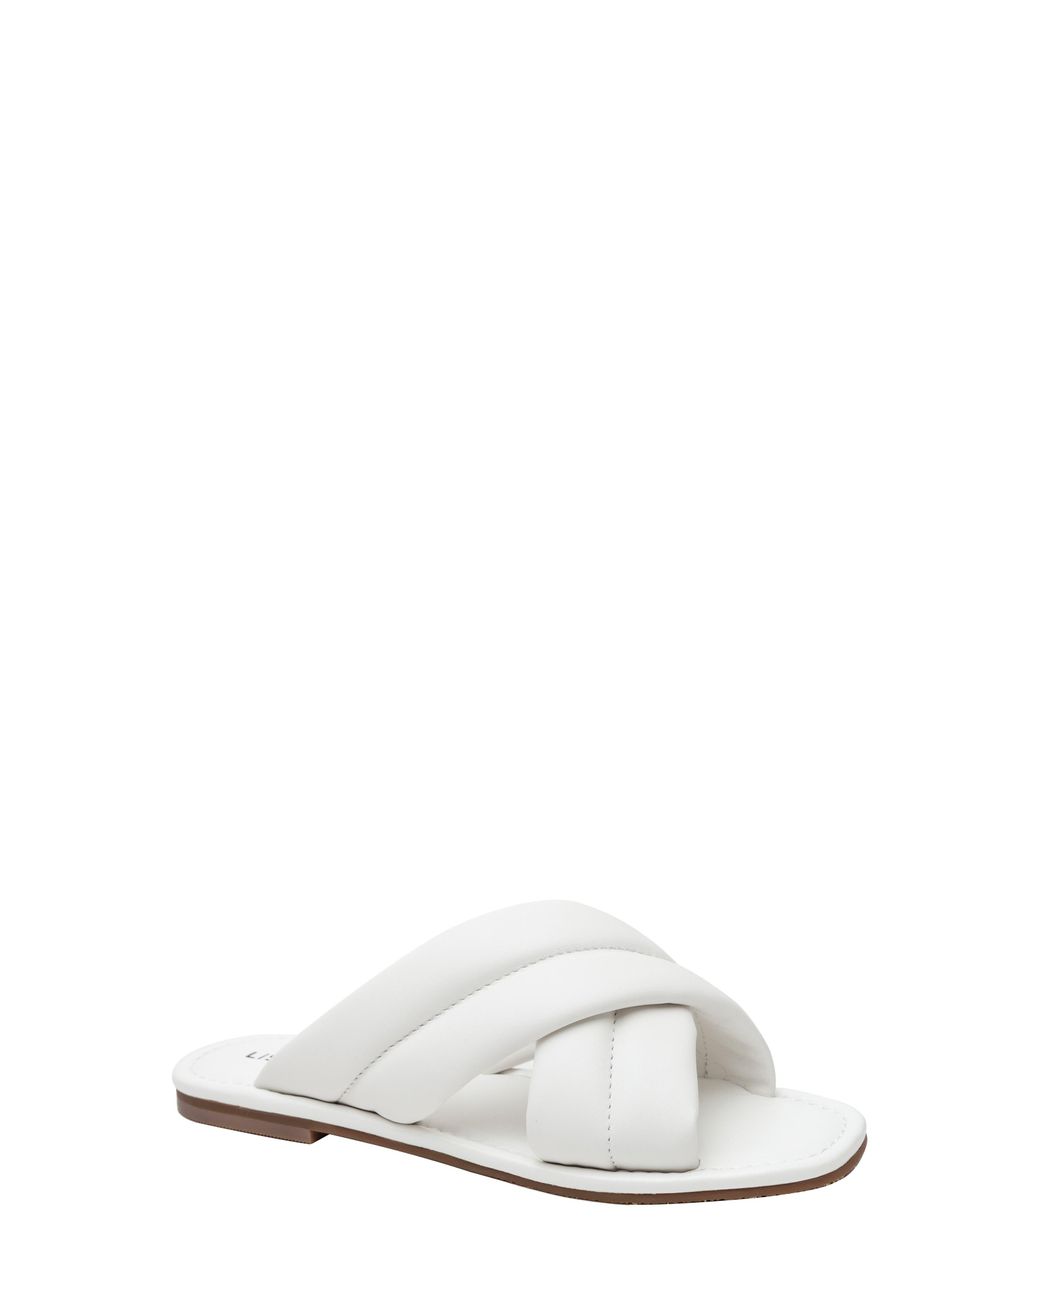 Lisa Vicky Mentor Slide Sandal in White | Lyst